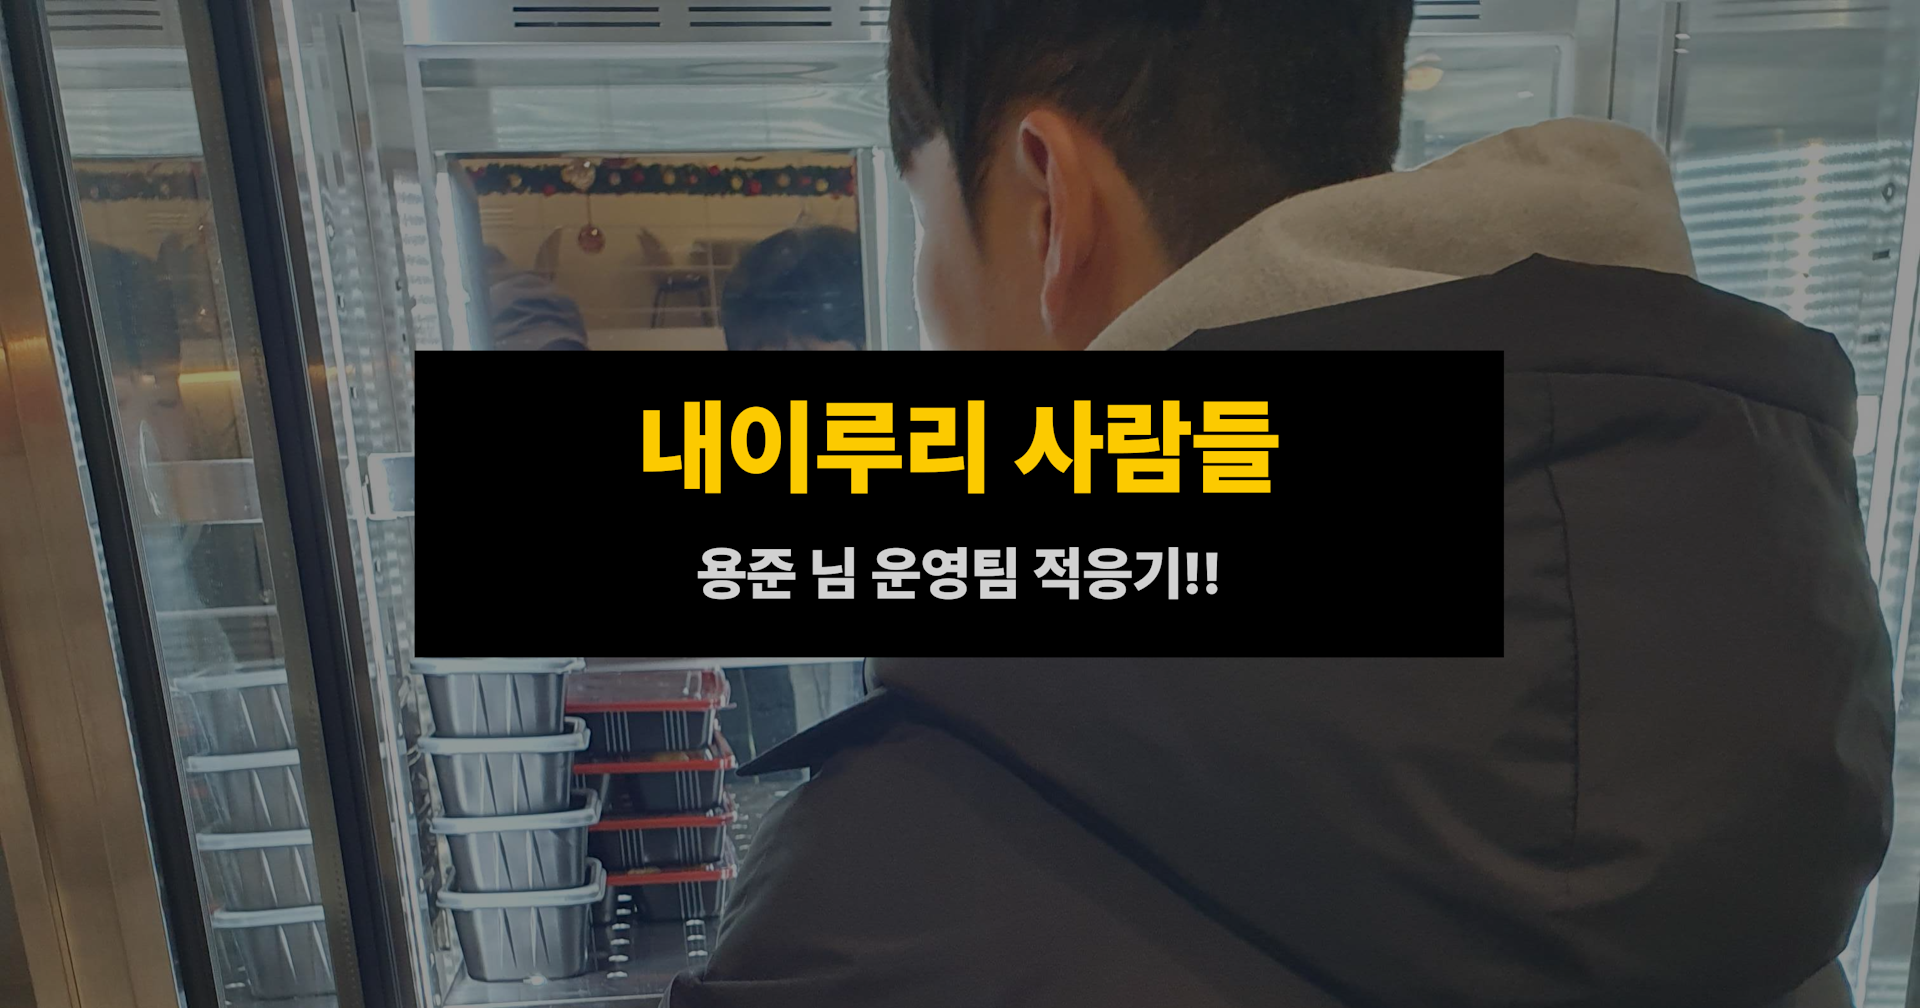 내이루리 사람들 - 용준 님 운영팀 적응기(1)